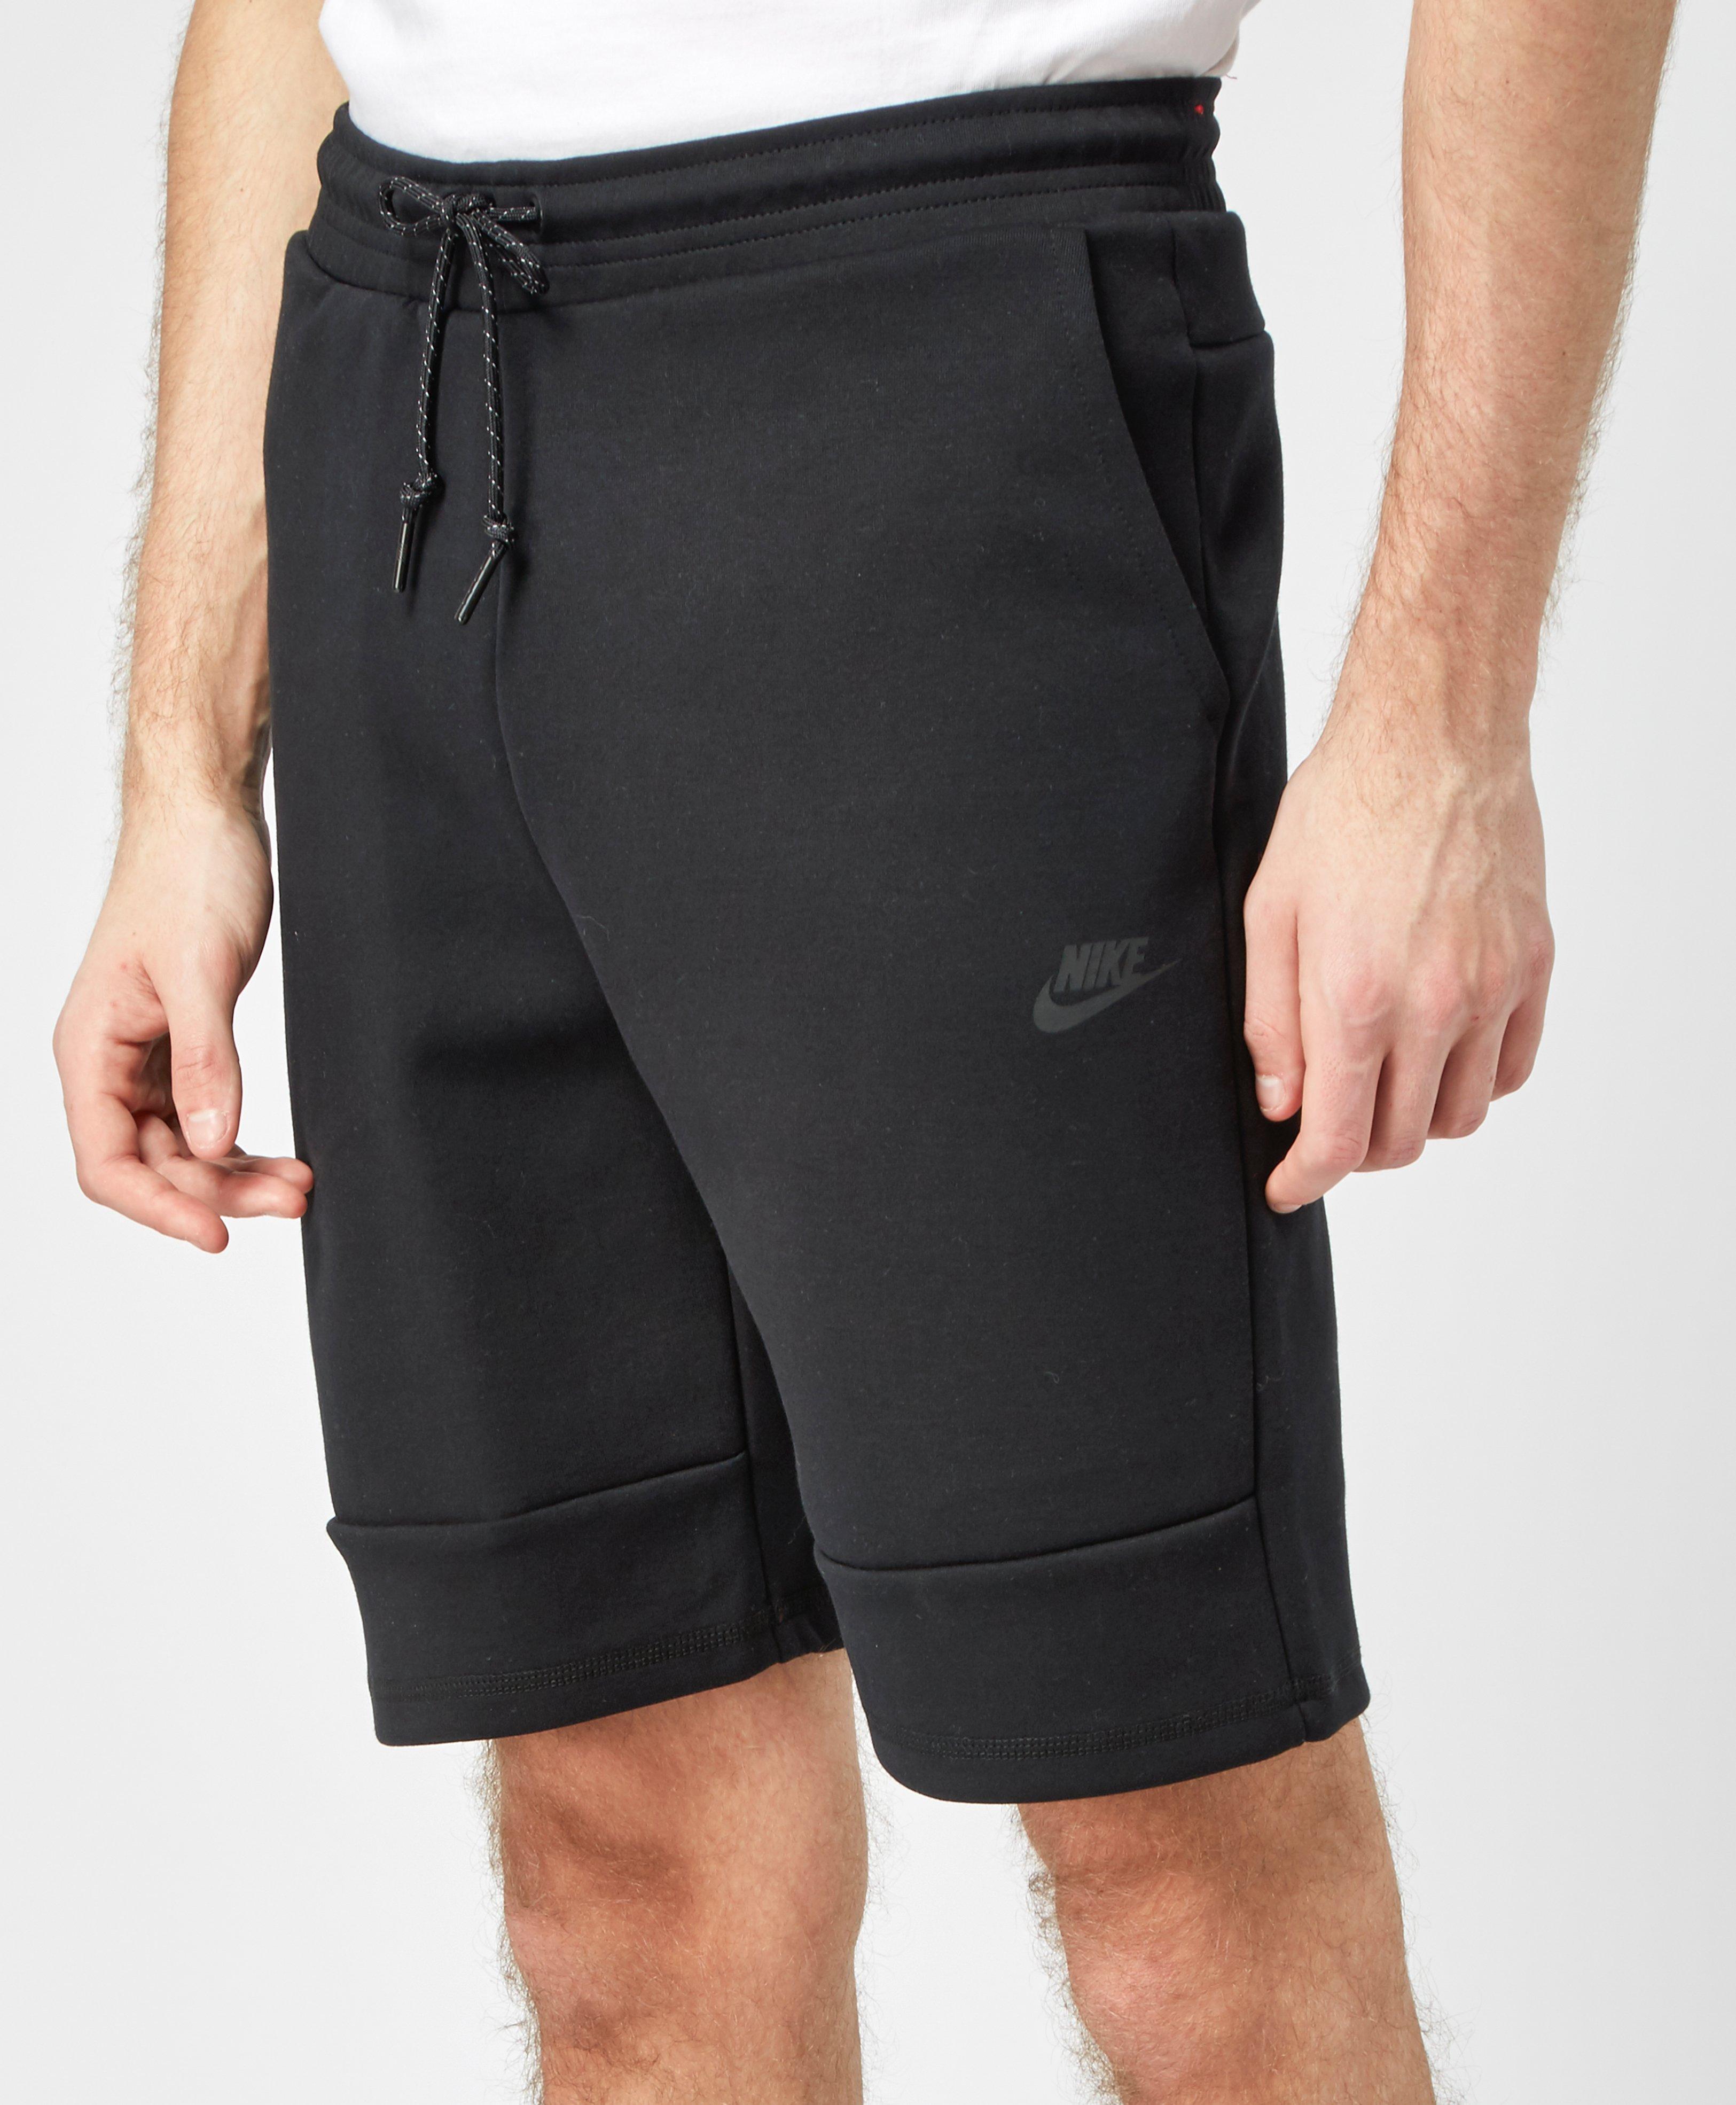 Lyst - Nike Tech Fleece Shorts in Black for Men